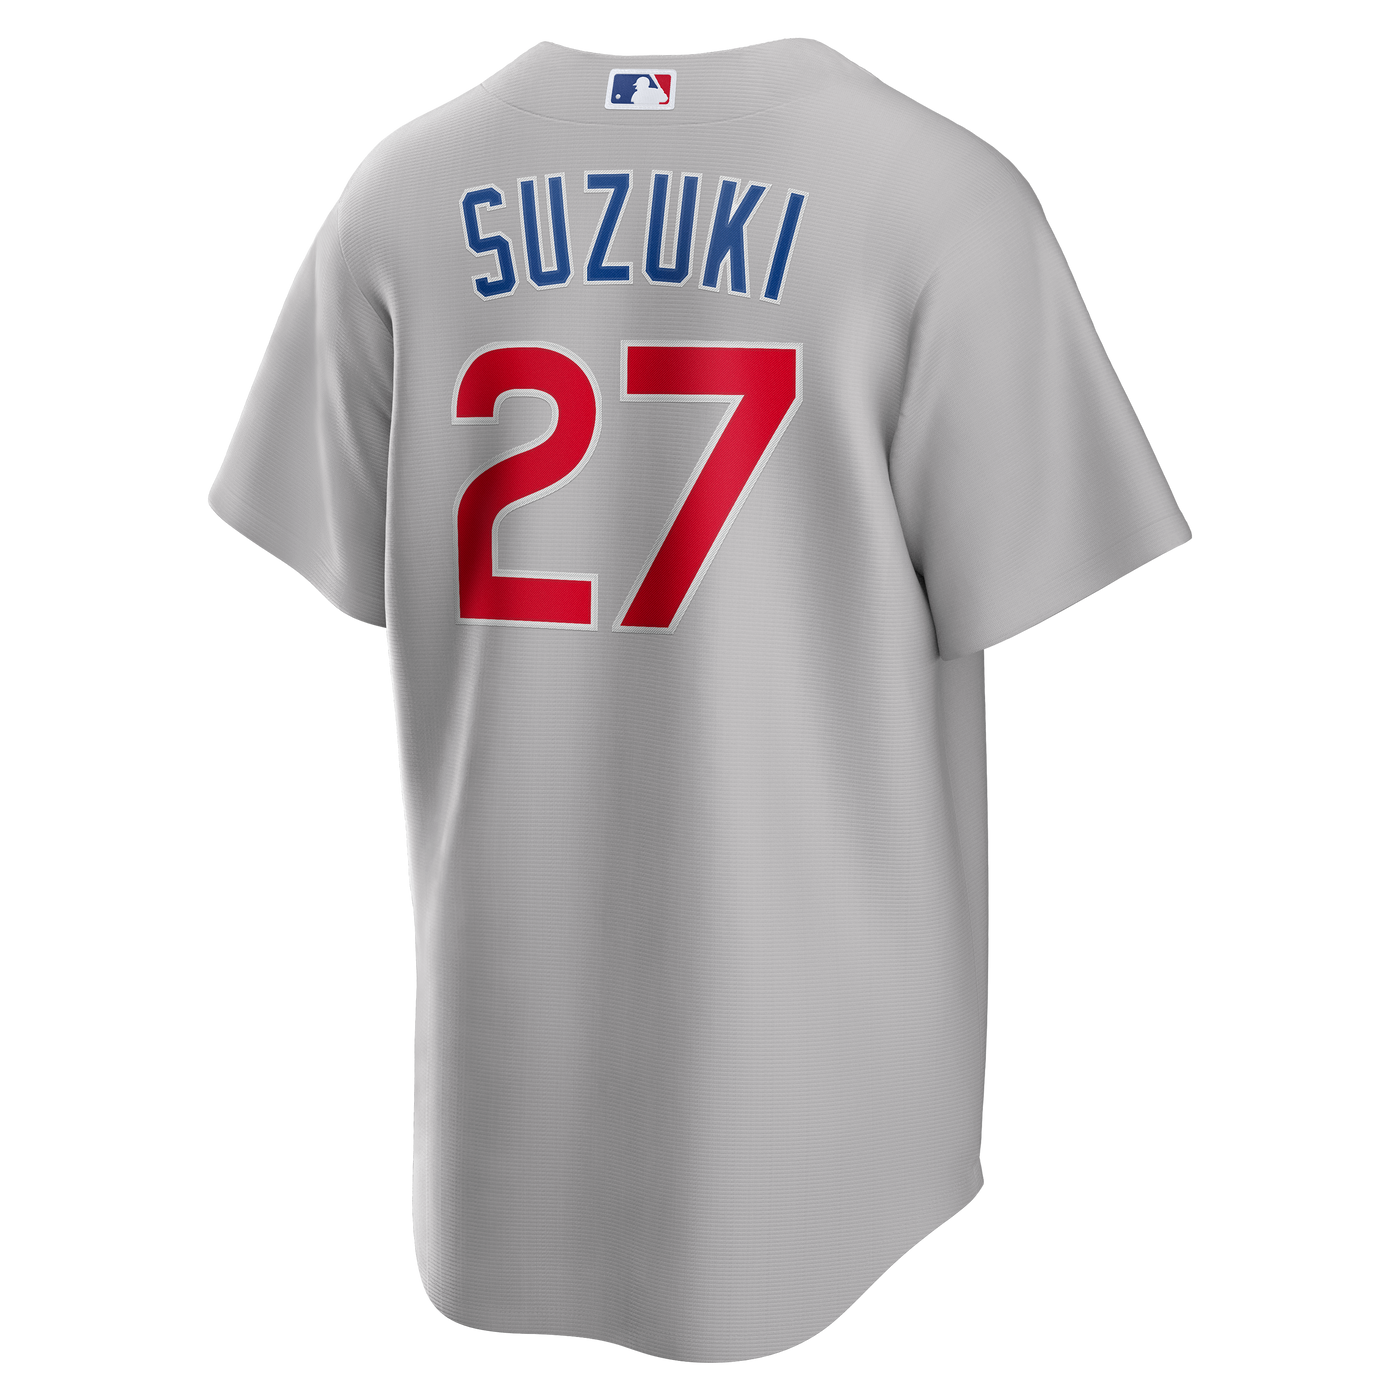 Nike Men's Seiya Suzuki Chicago Cubs White Home Replica Jersey